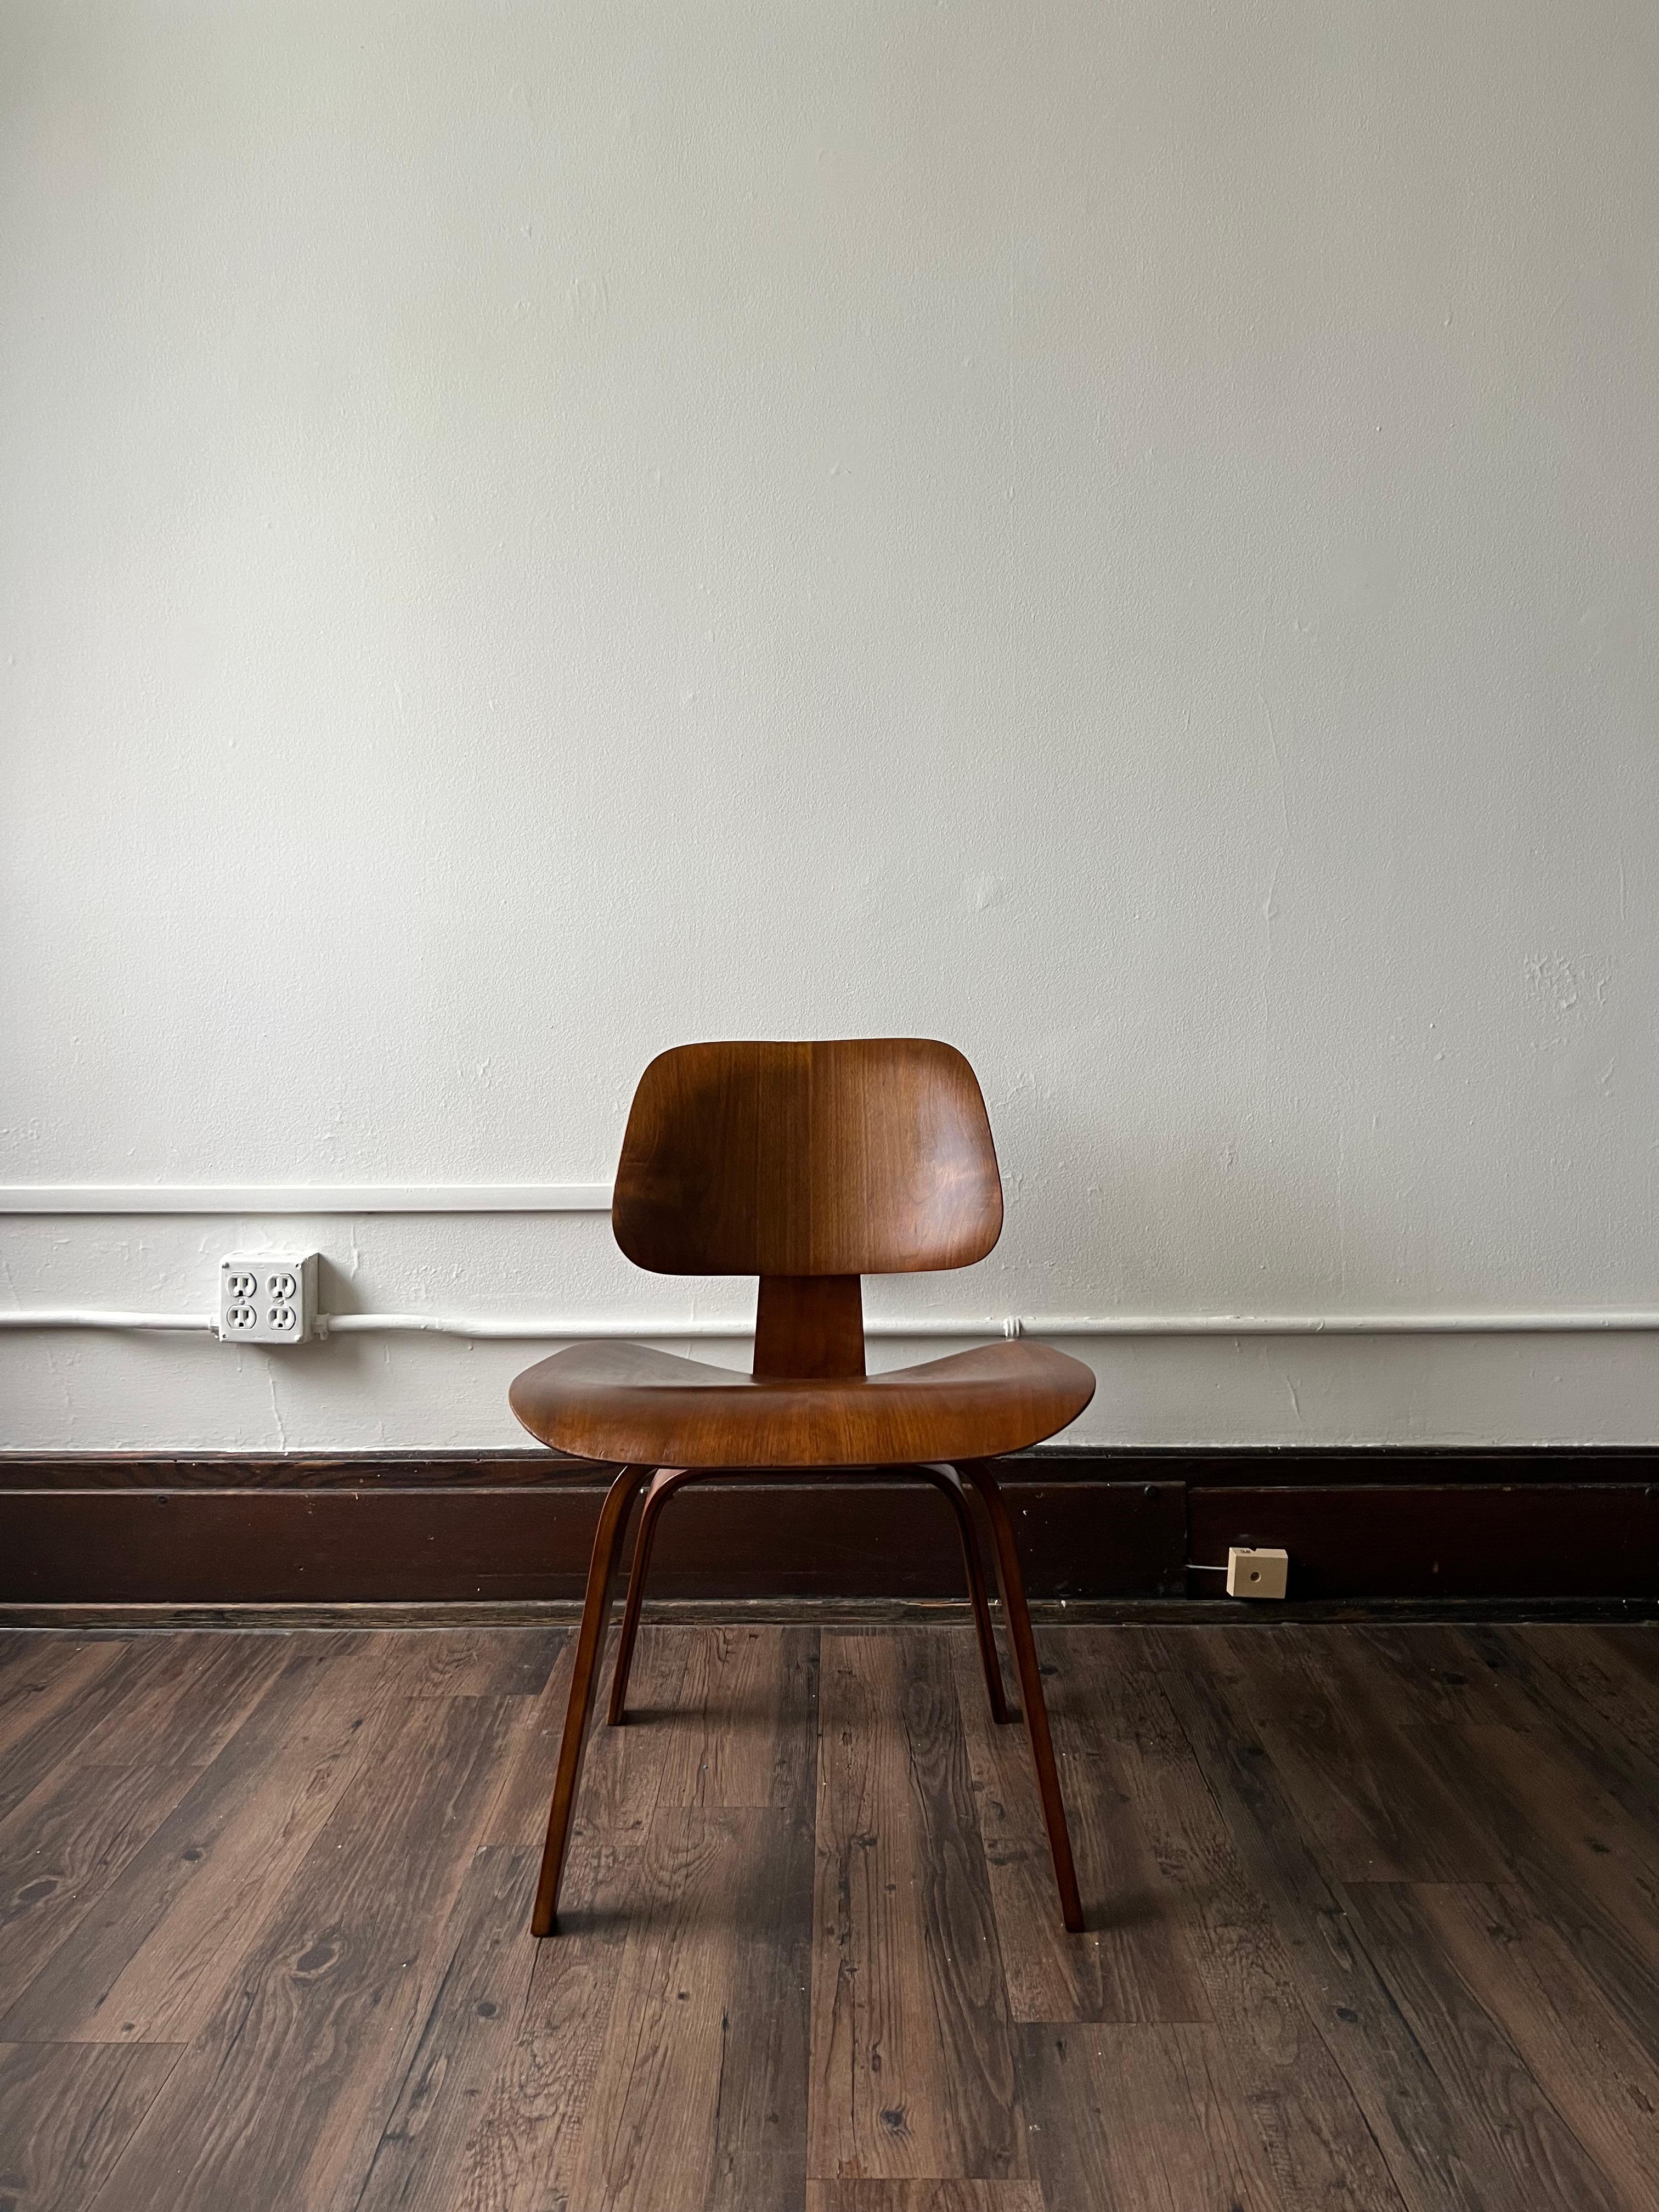 Première chaise de Charles et Ray Eames, la DCW a changé à jamais le modernisme du milieu du siècle. Cet exemplaire en frêne n'est pas marqué mais possède le modèle de vis 5-2-5 qui est documenté et bien connu pour être de la production d'Evans